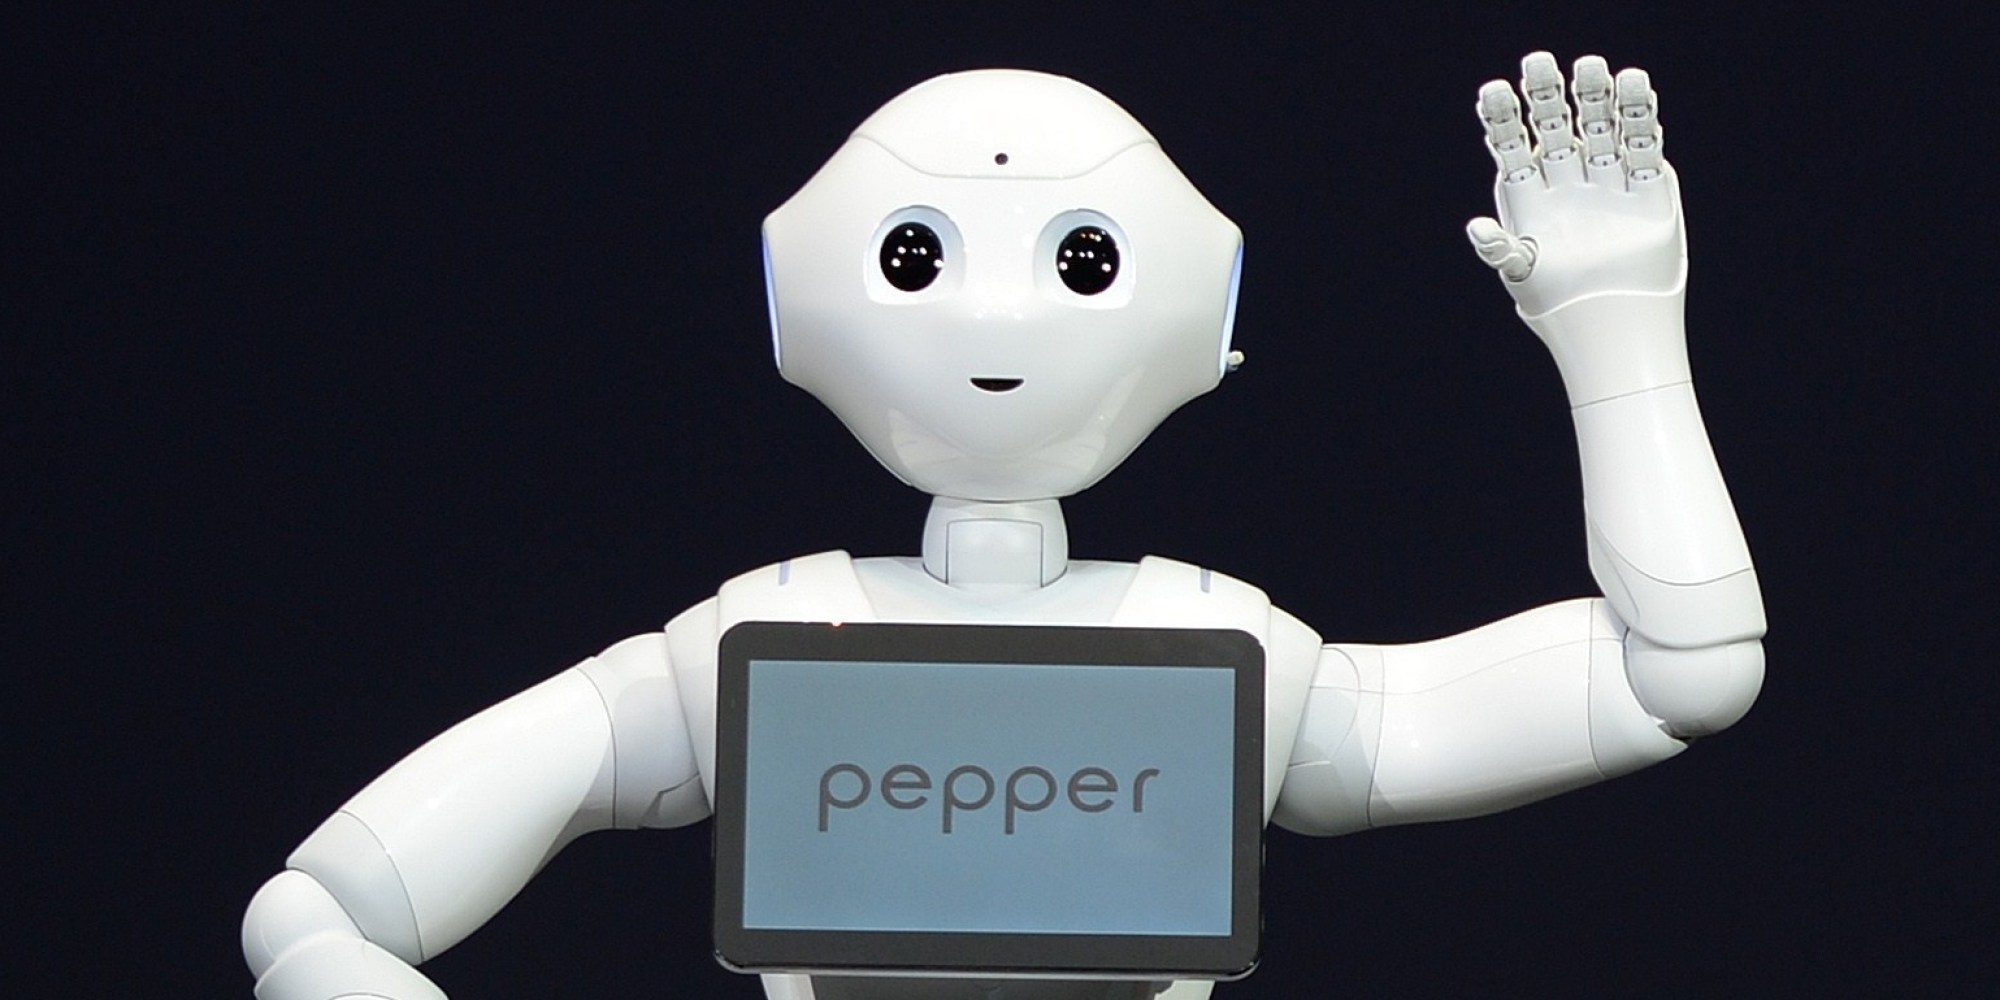 Personal companion robot, pepper